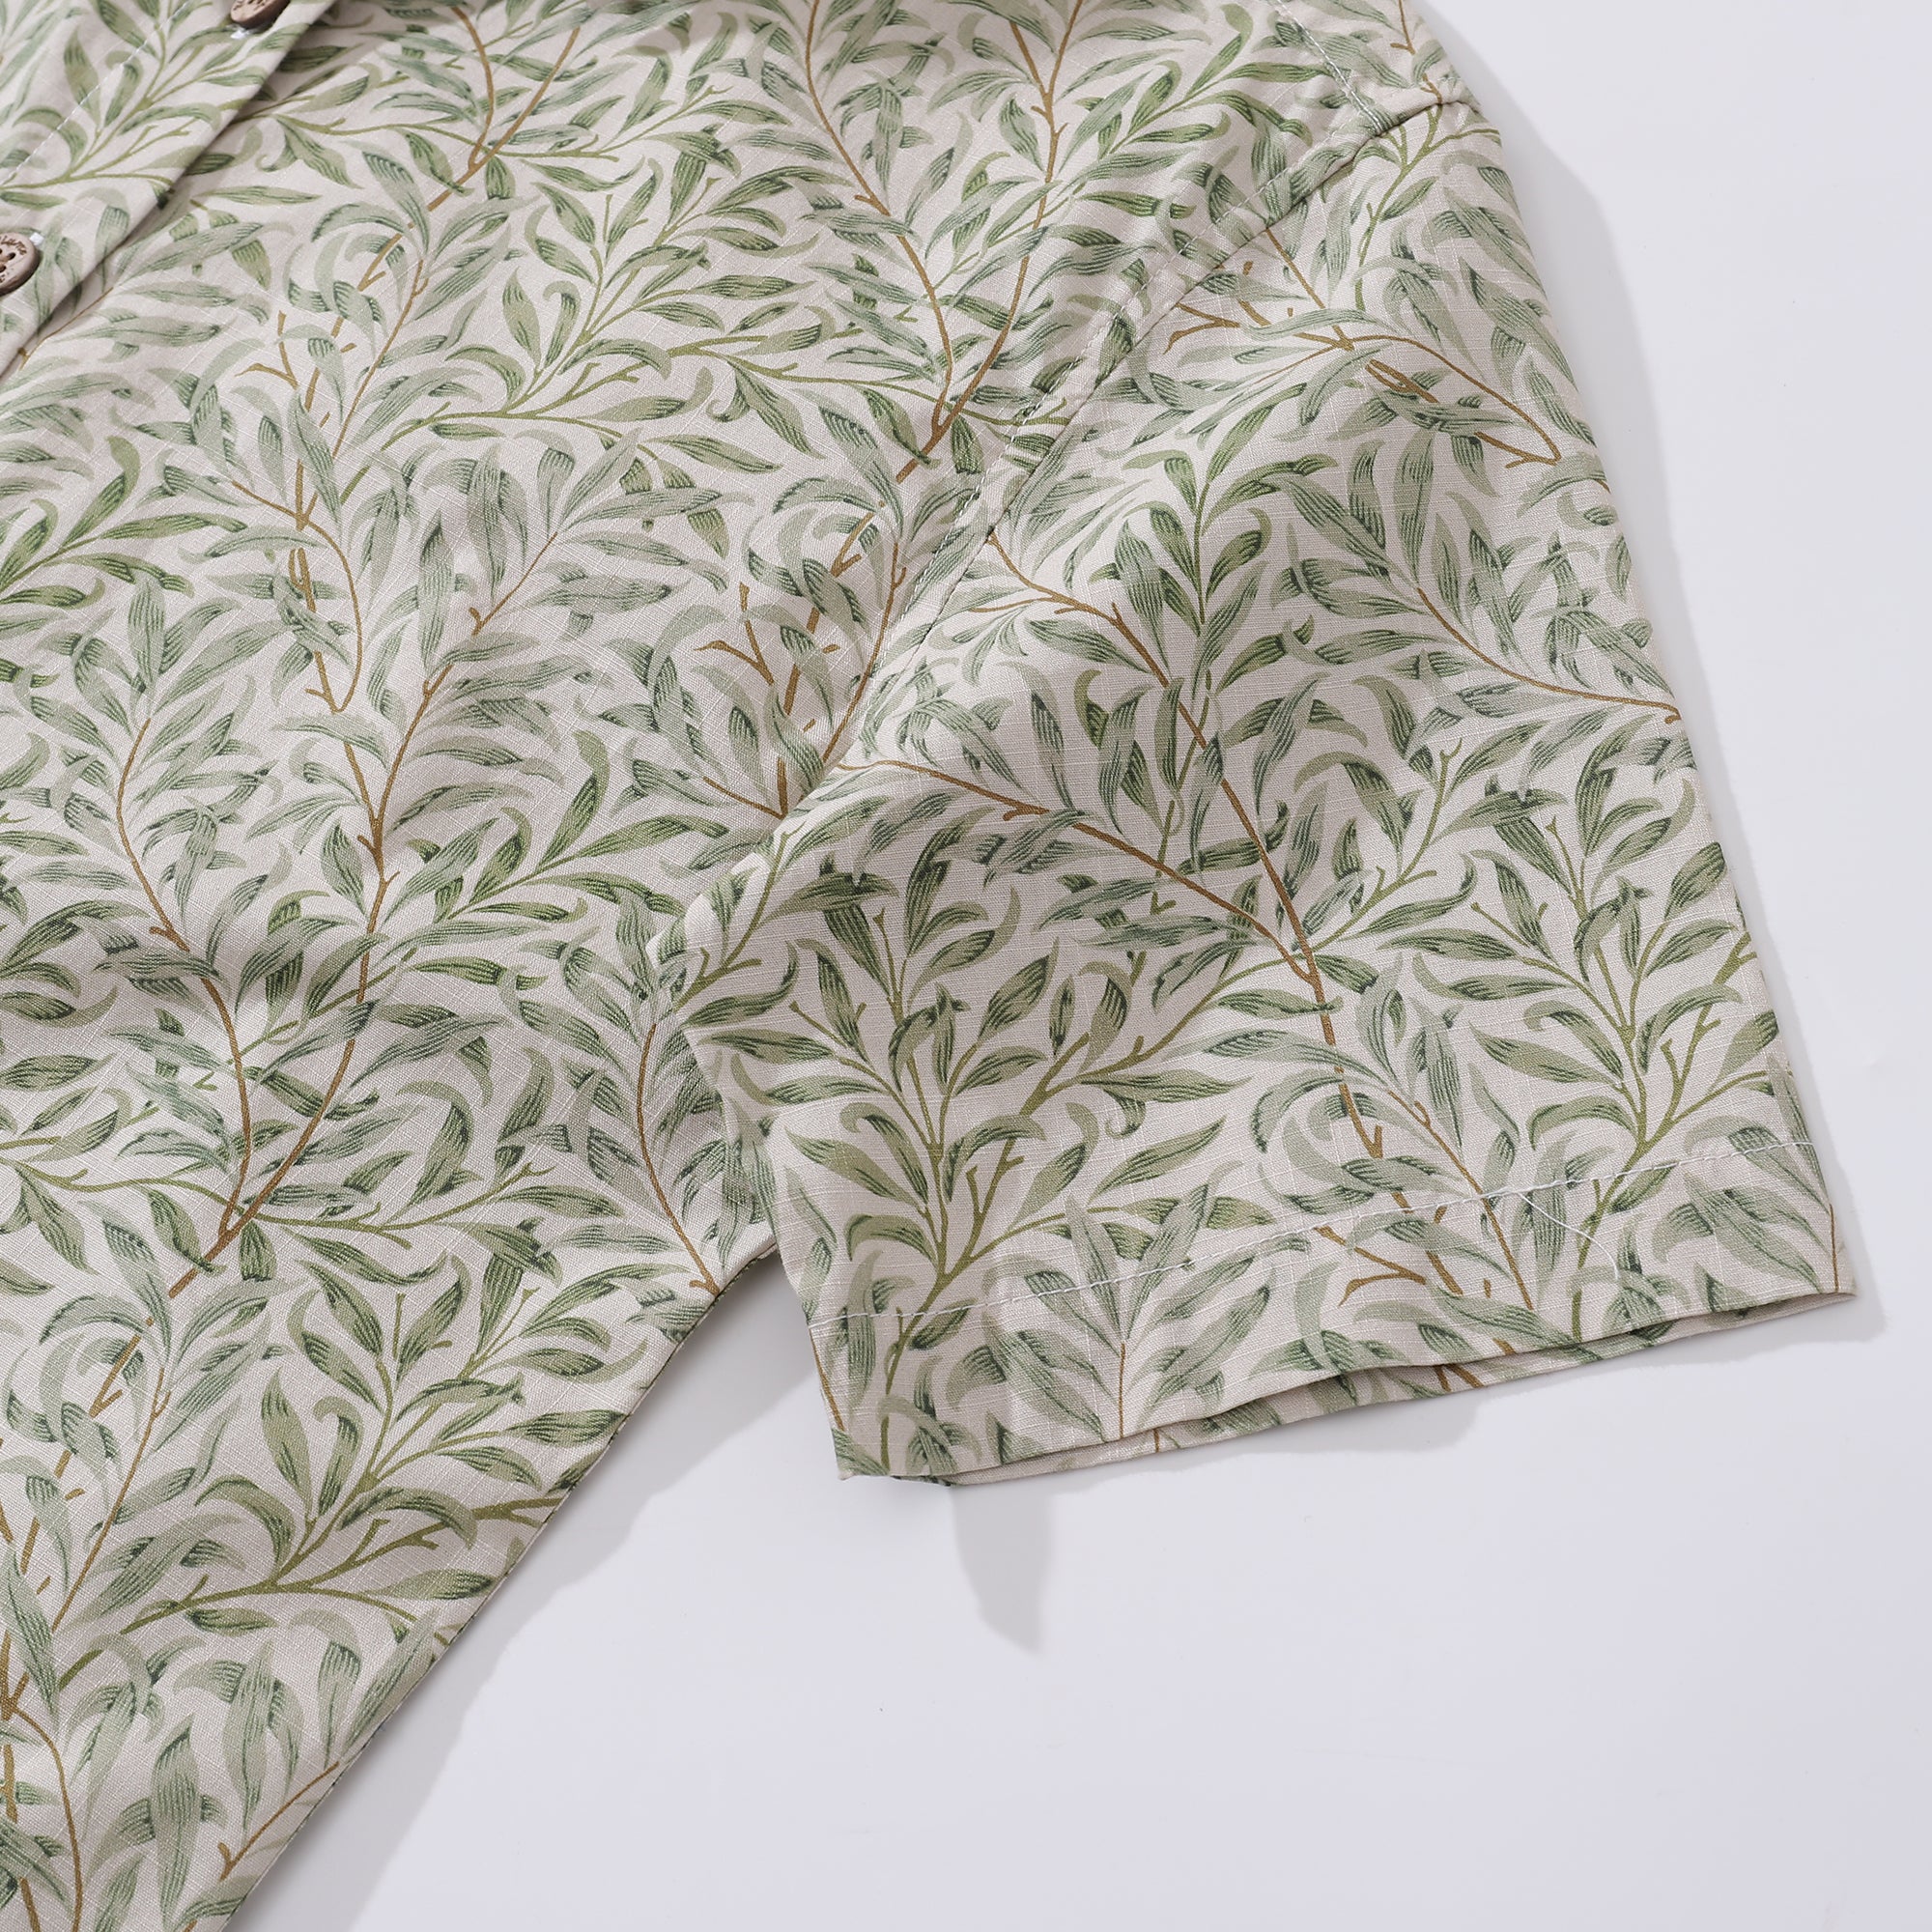 Women's Hawaiian Shirt Willow Print Cotton Button-down Short Sleeve